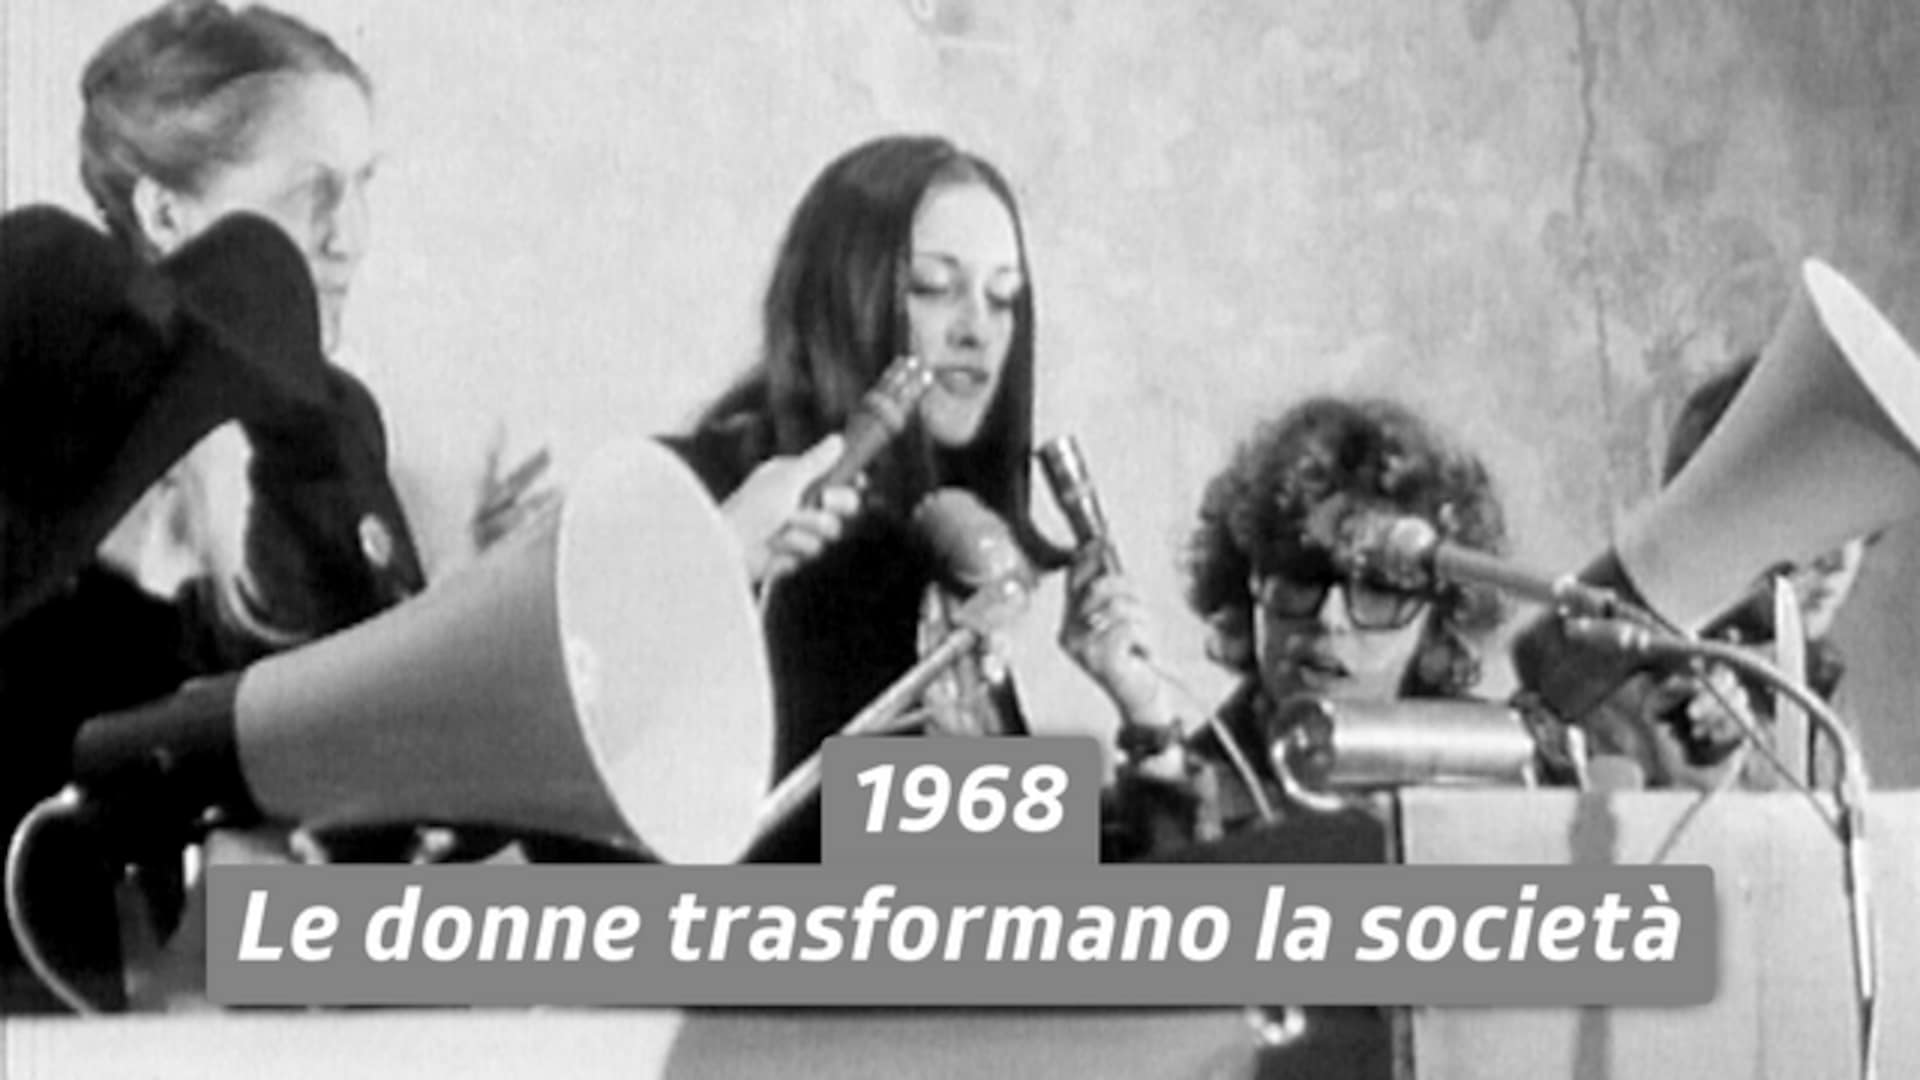 1968 - Le donne trasformano la società